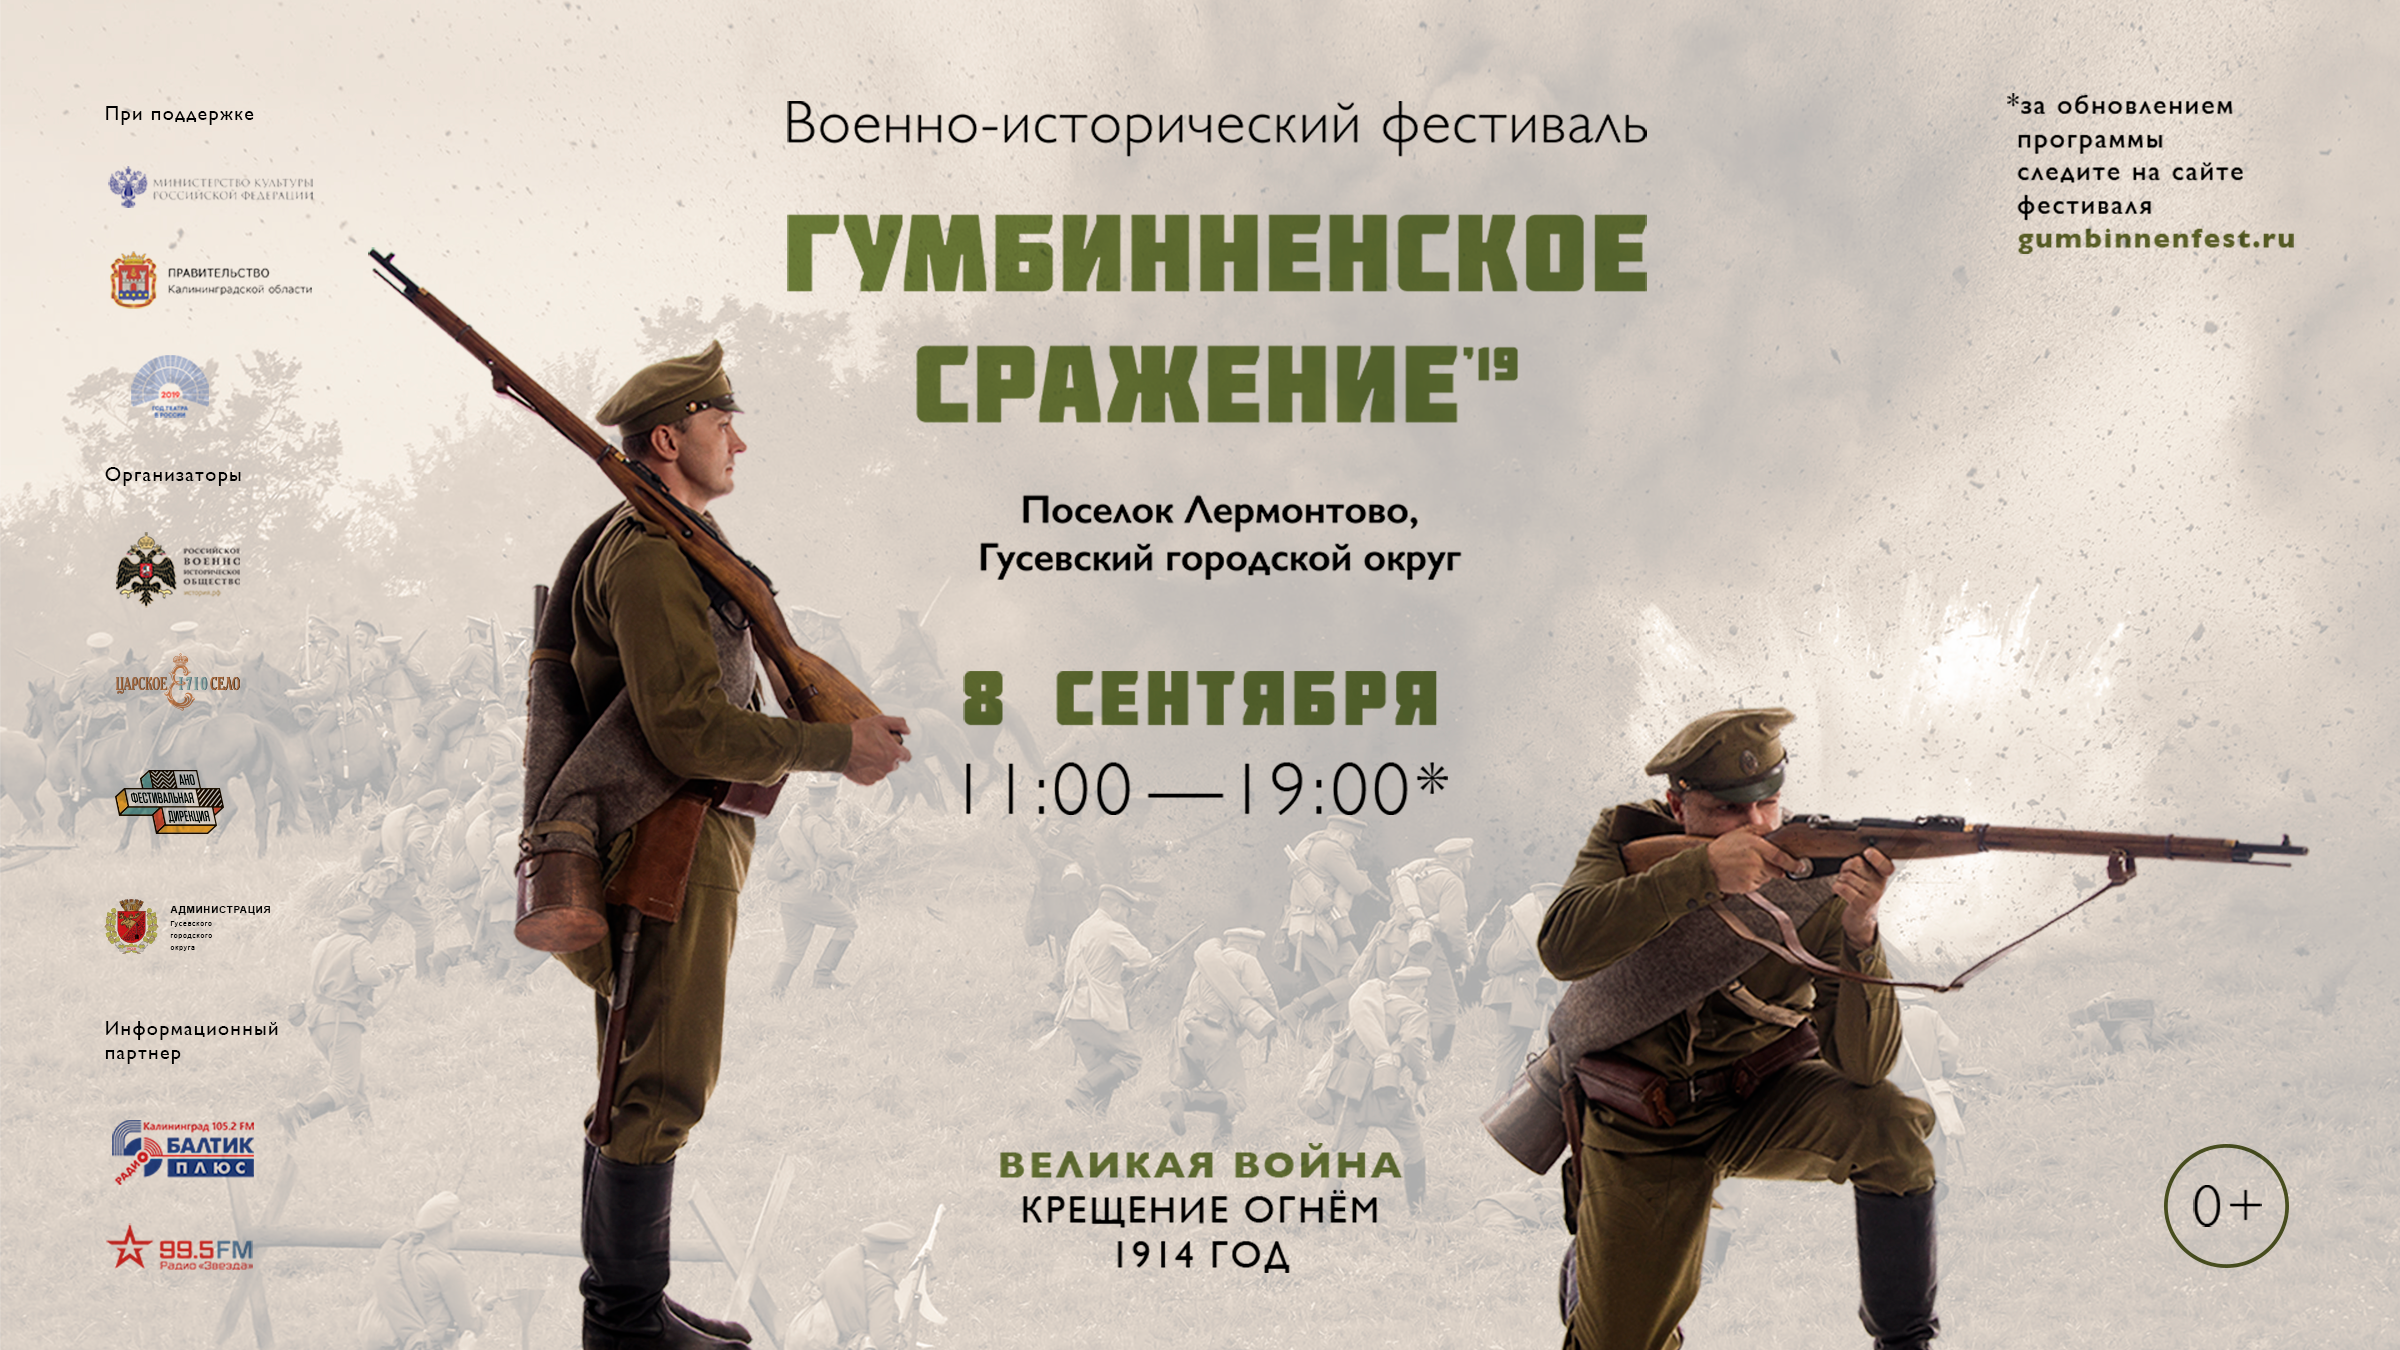 Военно-исторический фестиваль «Гумбинненское сражение» будет посвящен 105-летию победы Русской Армии в одноименном бою